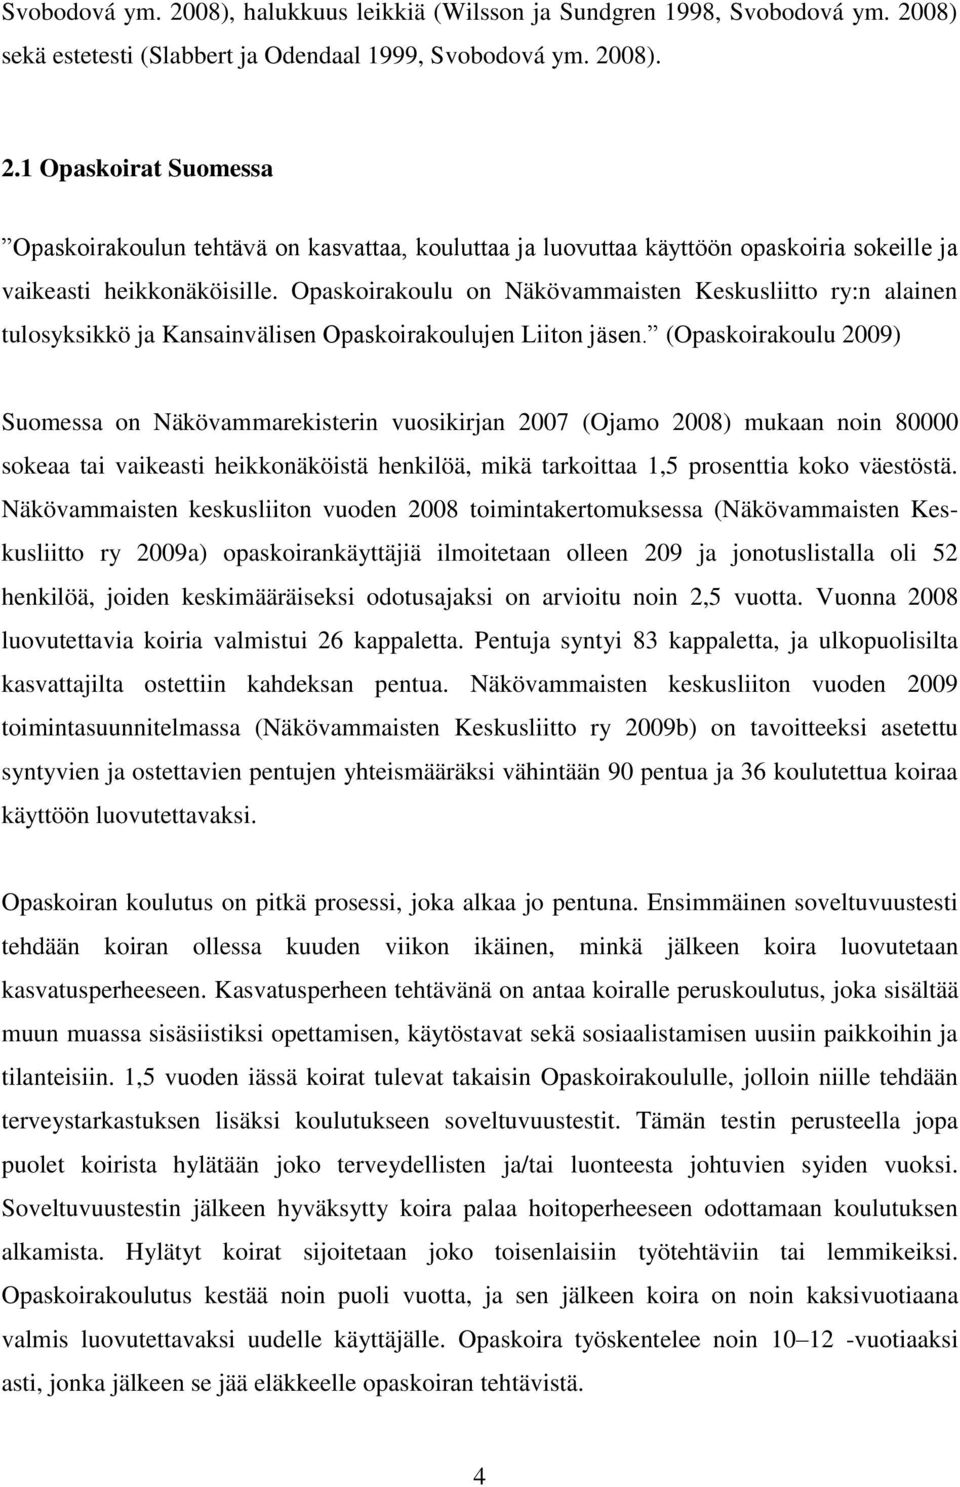 (Opaskoirakoulu 2009) Suomessa on Näkövammarekisterin vuosikirjan 2007 (Ojamo 2008) mukaan noin 80000 sokeaa tai vaikeasti heikkonäköistä henkilöä, mikä tarkoittaa 1,5 prosenttia koko väestöstä.